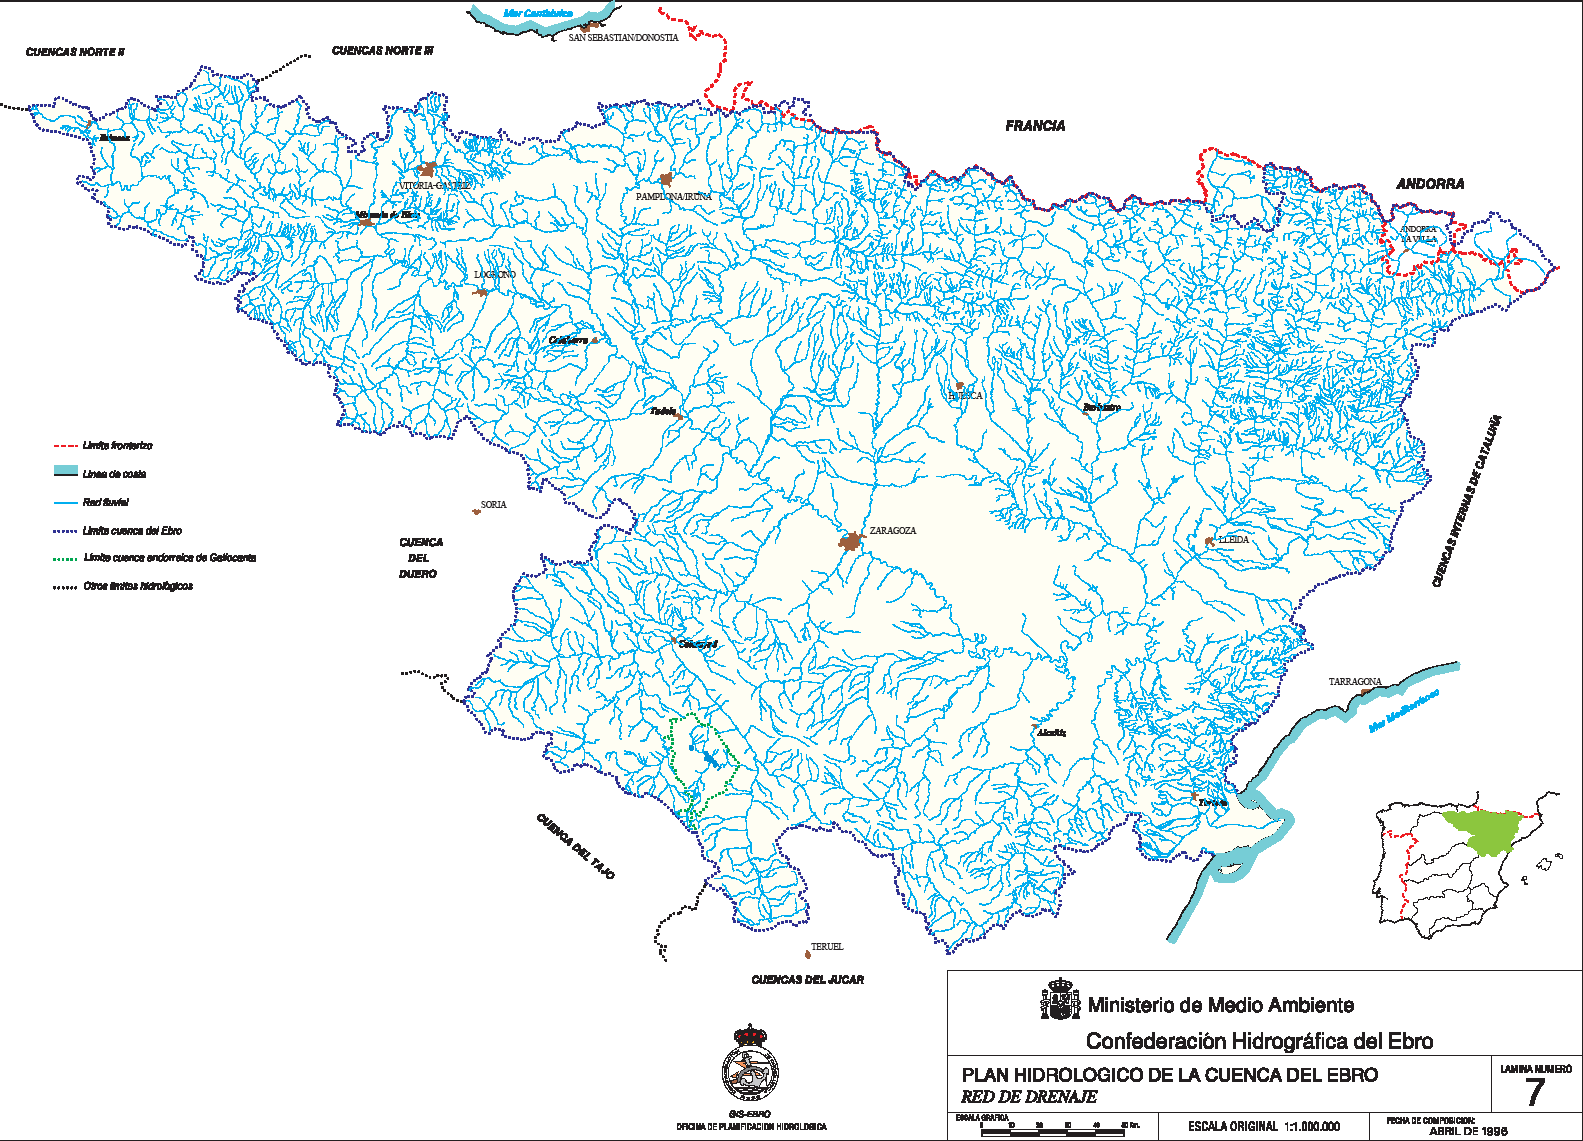 Red fluvial: Conjunto de cauces o cursos fluviales ubicados en el interior de una cuenca, a través de